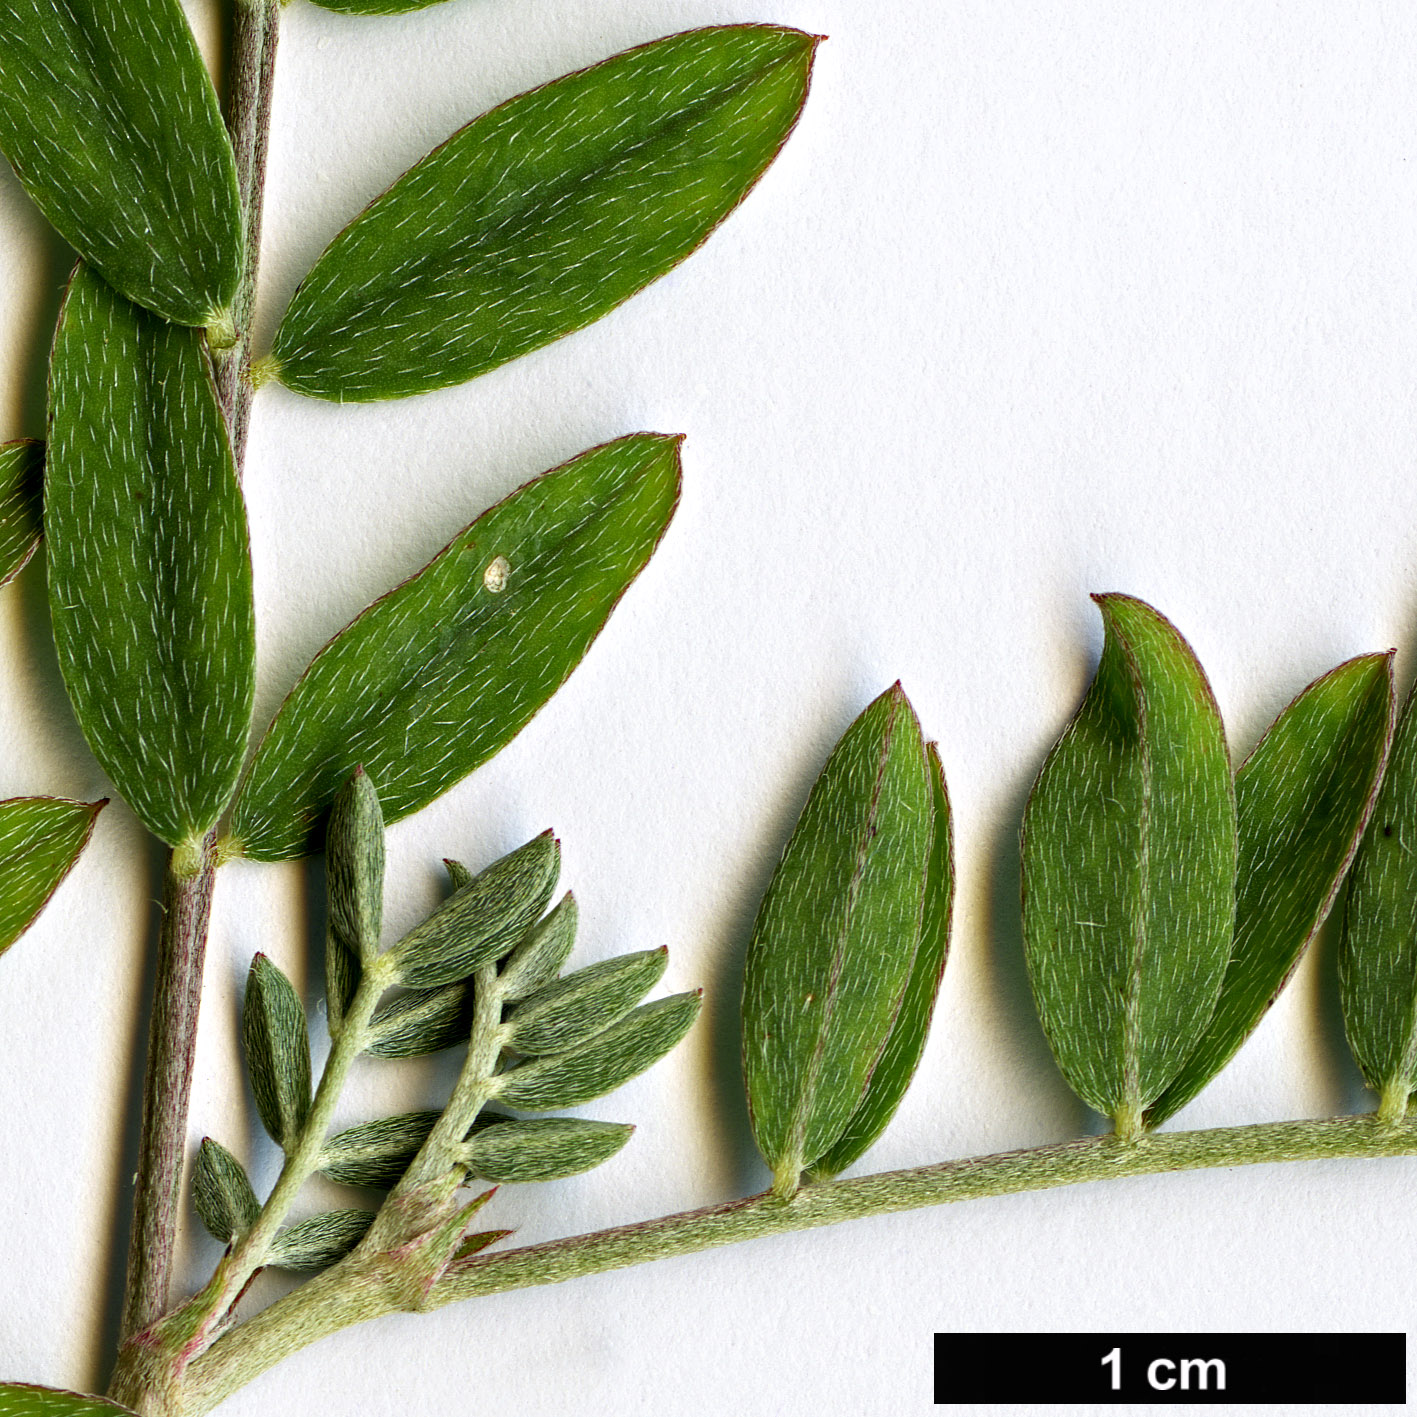 High resolution image: Family: Fabaceae - Genus: Astragalus - Taxon: vesicarius - SpeciesSub: subsp. carniolicus